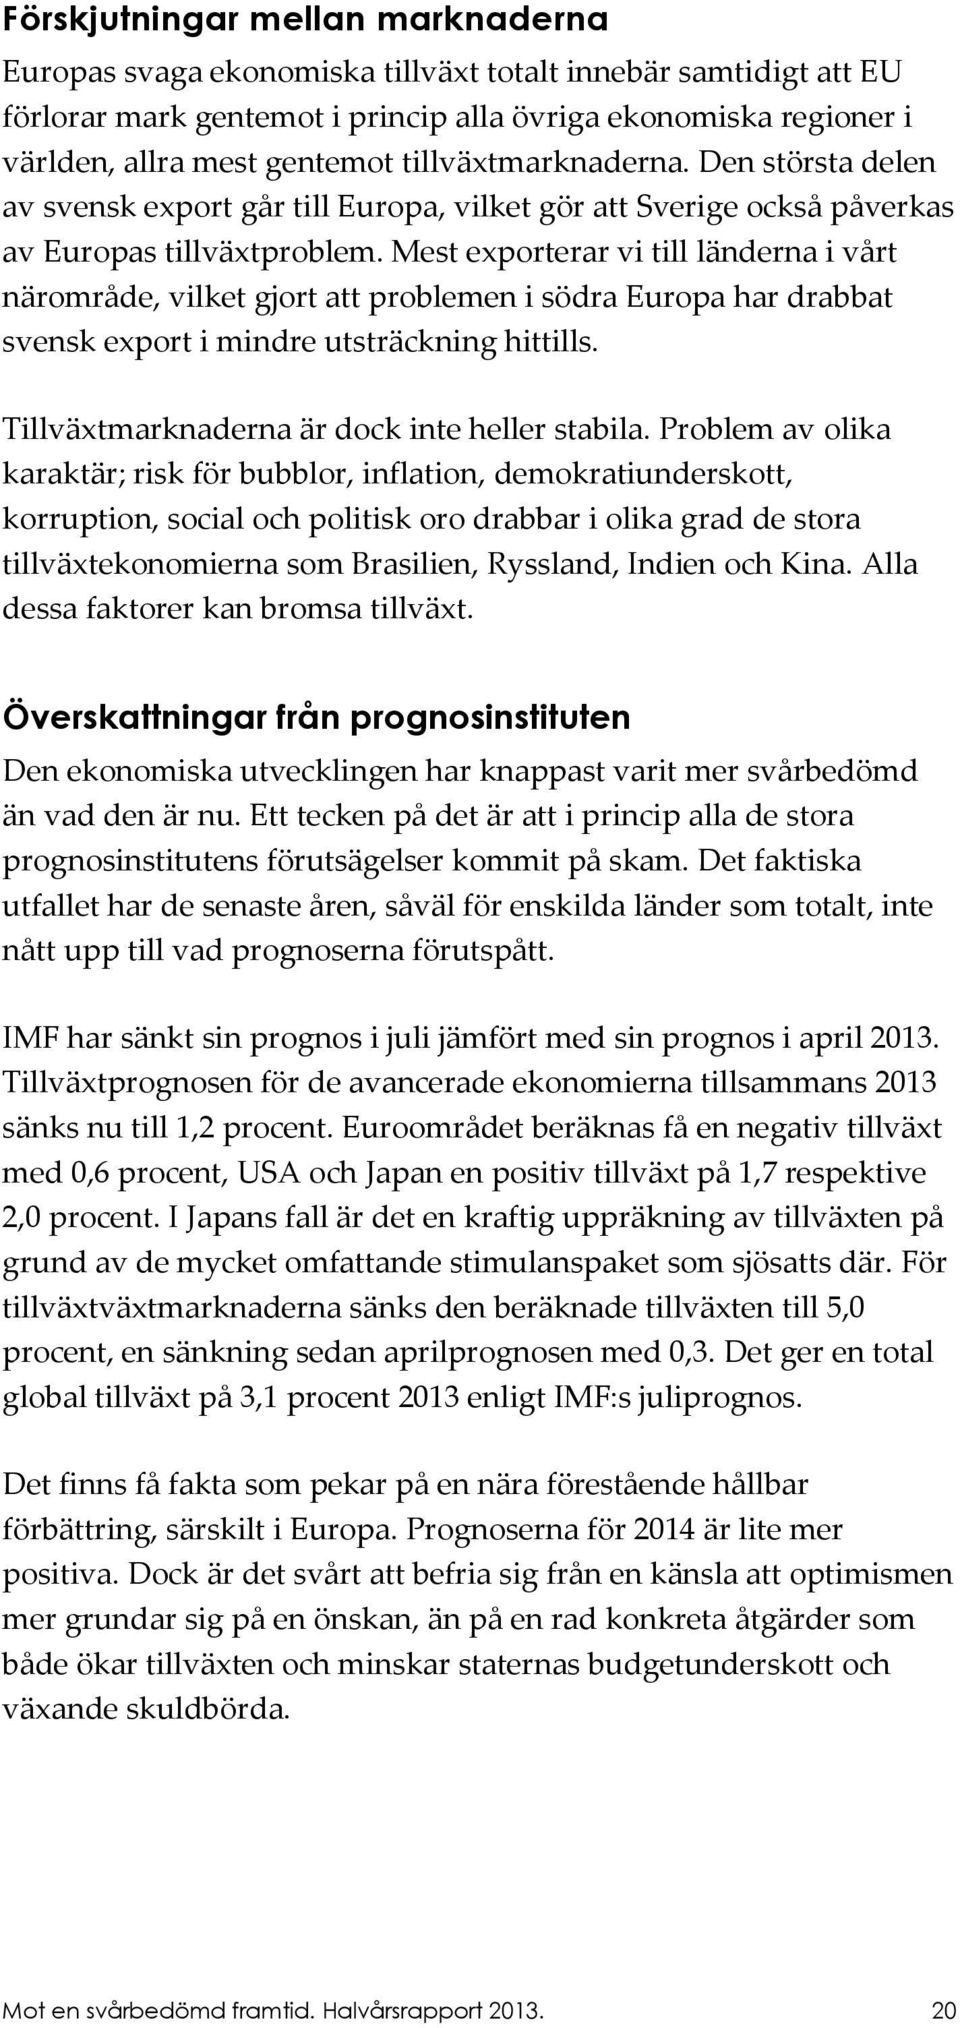 Mest exporterar vi till länderna i vt närområde, vilket gjort att problemen i södra Europa har drabbat svensk export i mindre utsträckning hittills. Tillväxtmarknaderna är dock inte heller stabila.